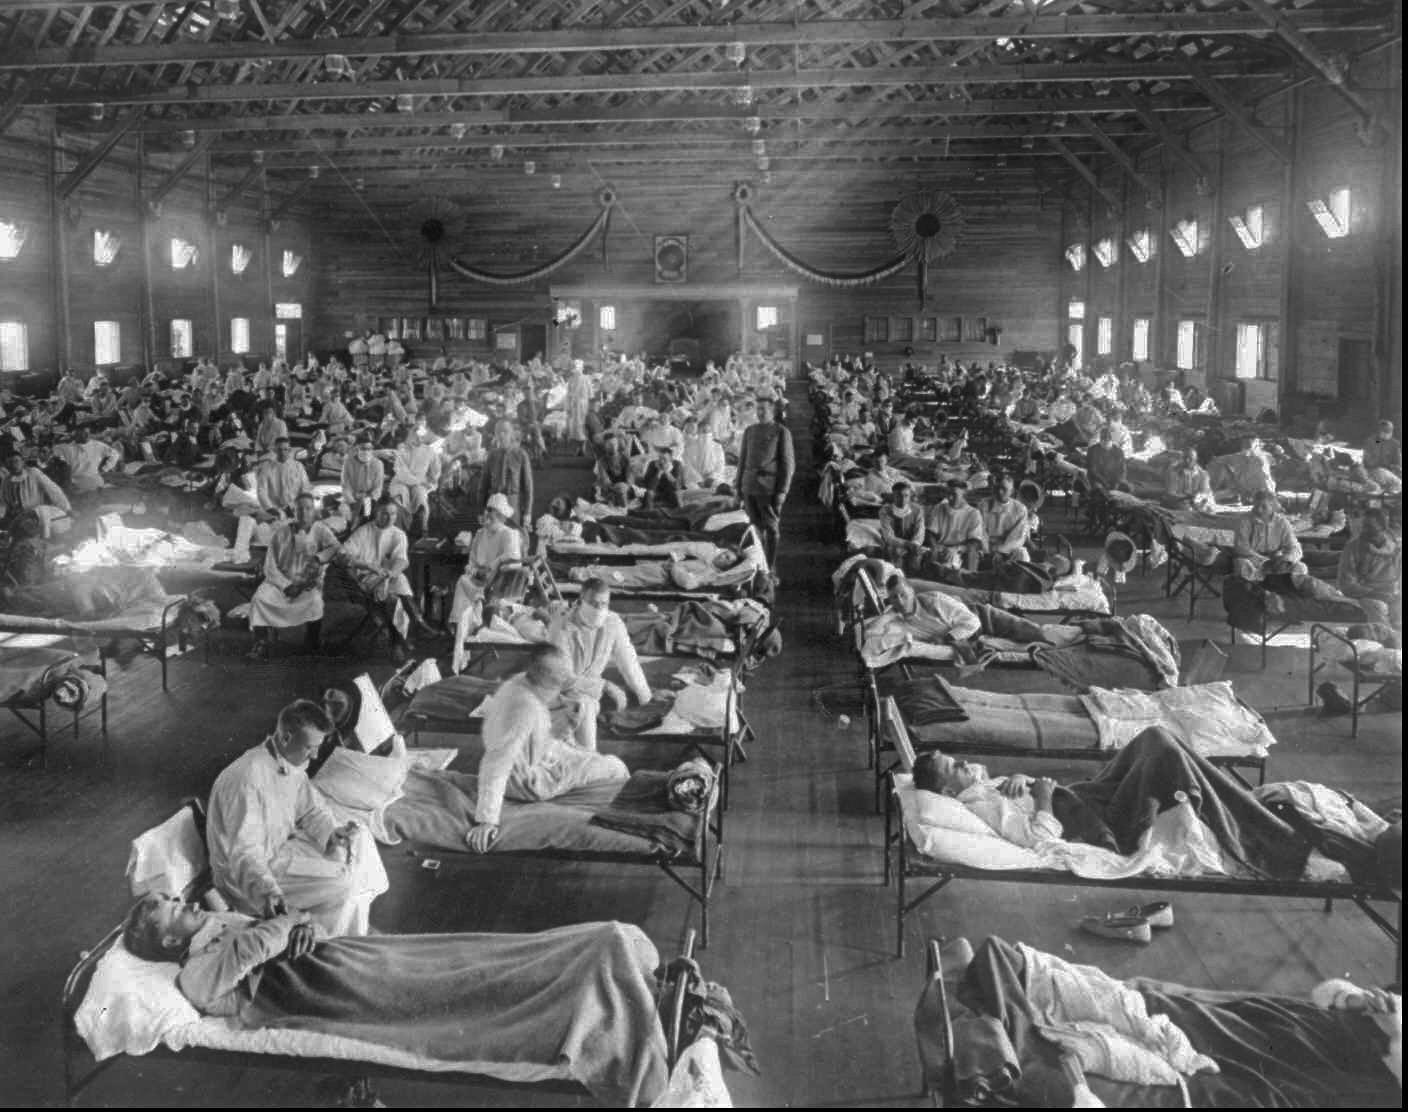  Sykdom og epidemier fulgte i krigens kjølvann. Millioner døde i spanskesyken som brøt ut i 1918 og 1919. Her fra et provisorisk sykehus i Fort Riley, Kansas.  (AP Photo/National Museum of Health) 